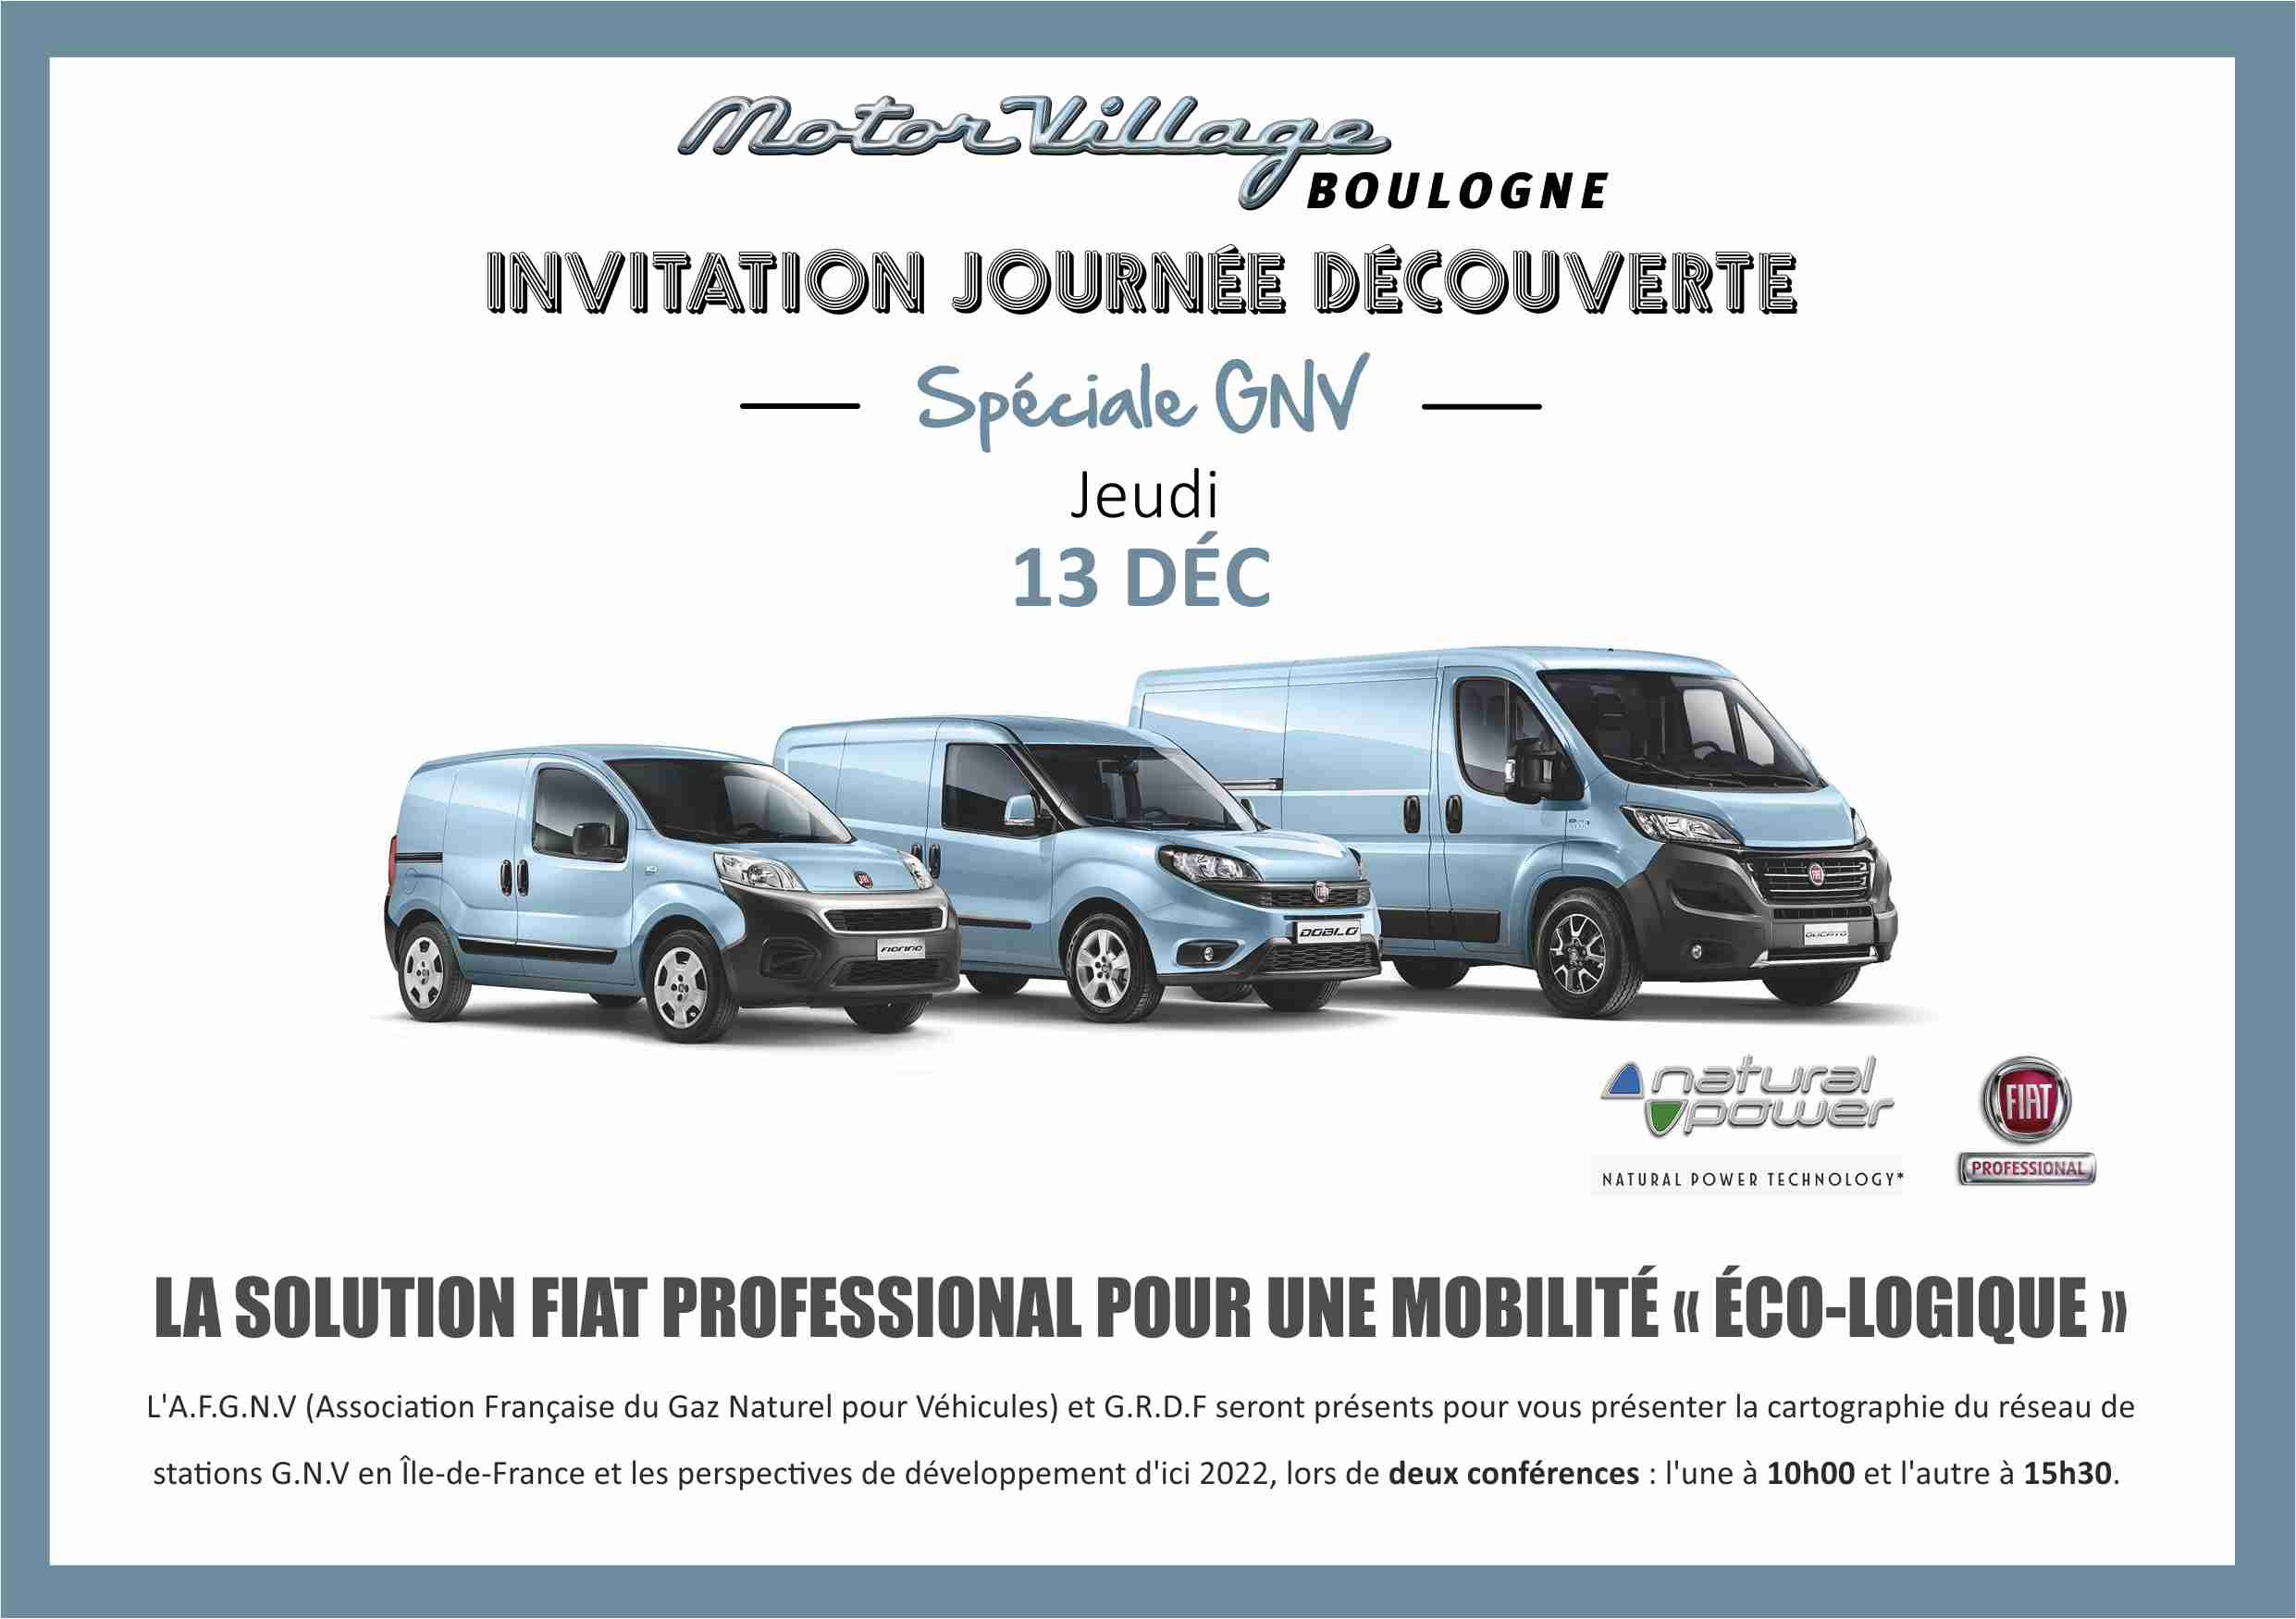 Le 13 décembre 2018, participez à la journée spéciale GNV organisée par FIAT Professsional à Boulogne (92)